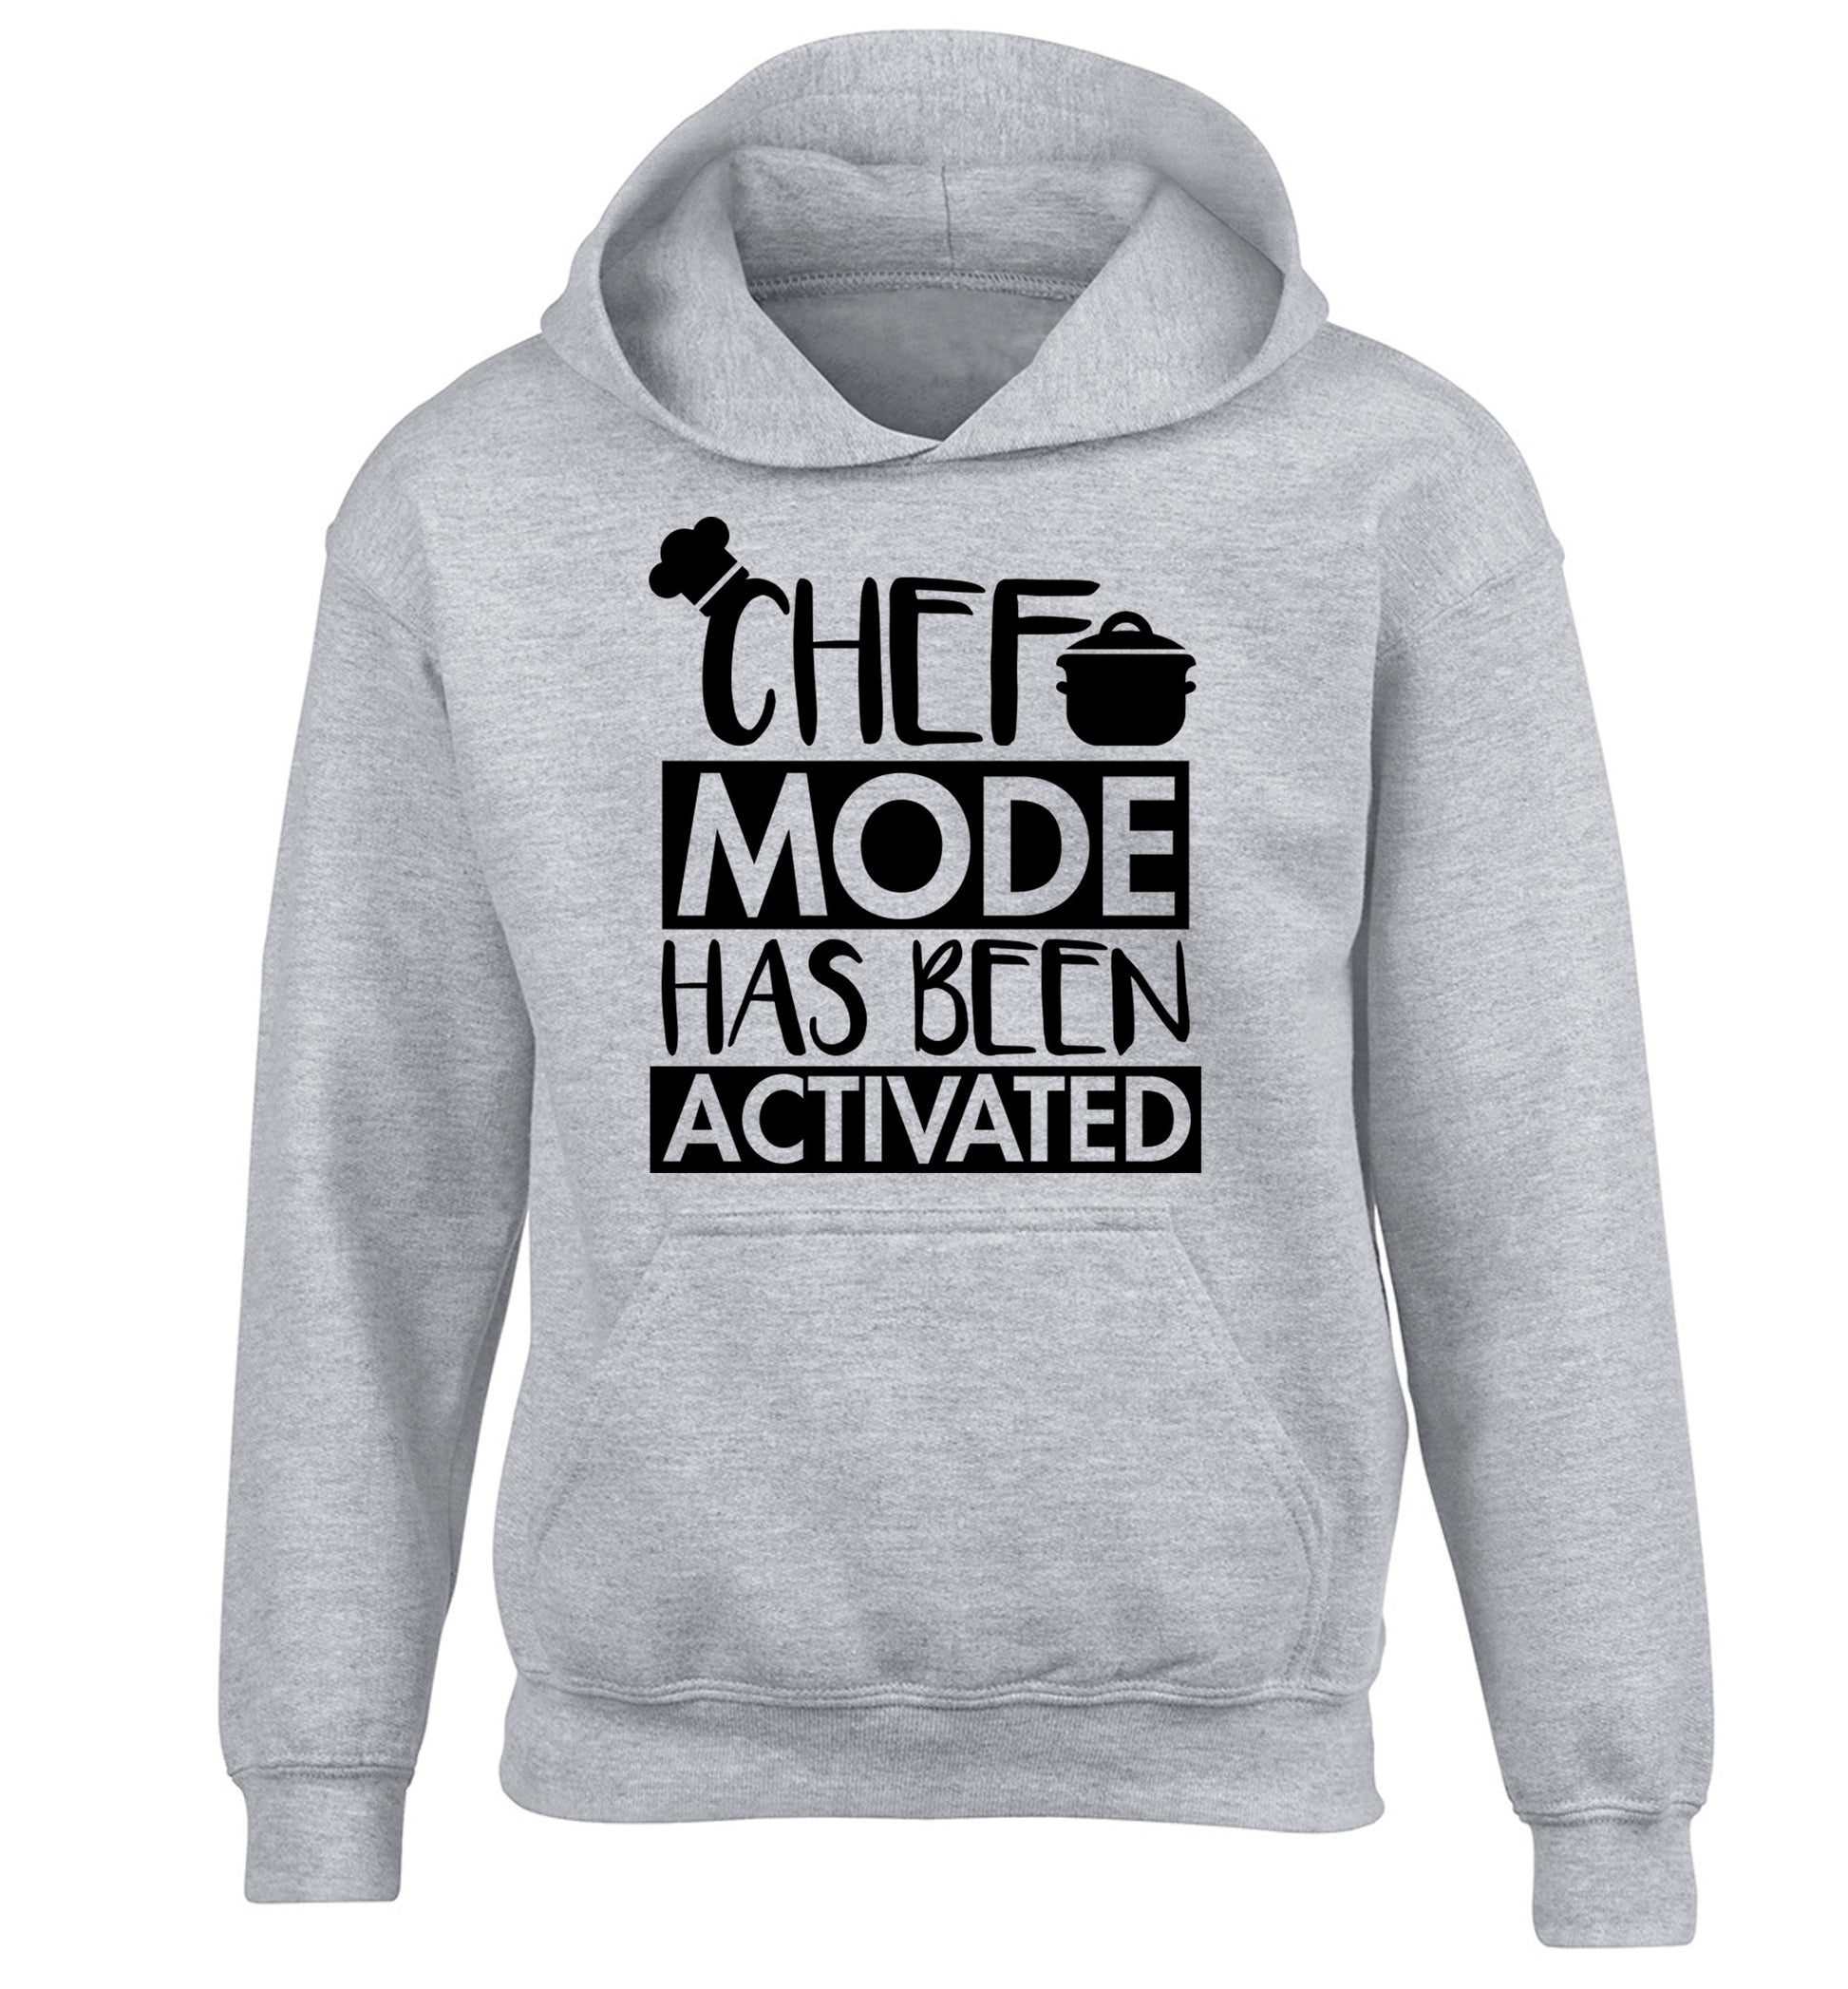 Chef mode has been activated children's grey hoodie 12-14 Years